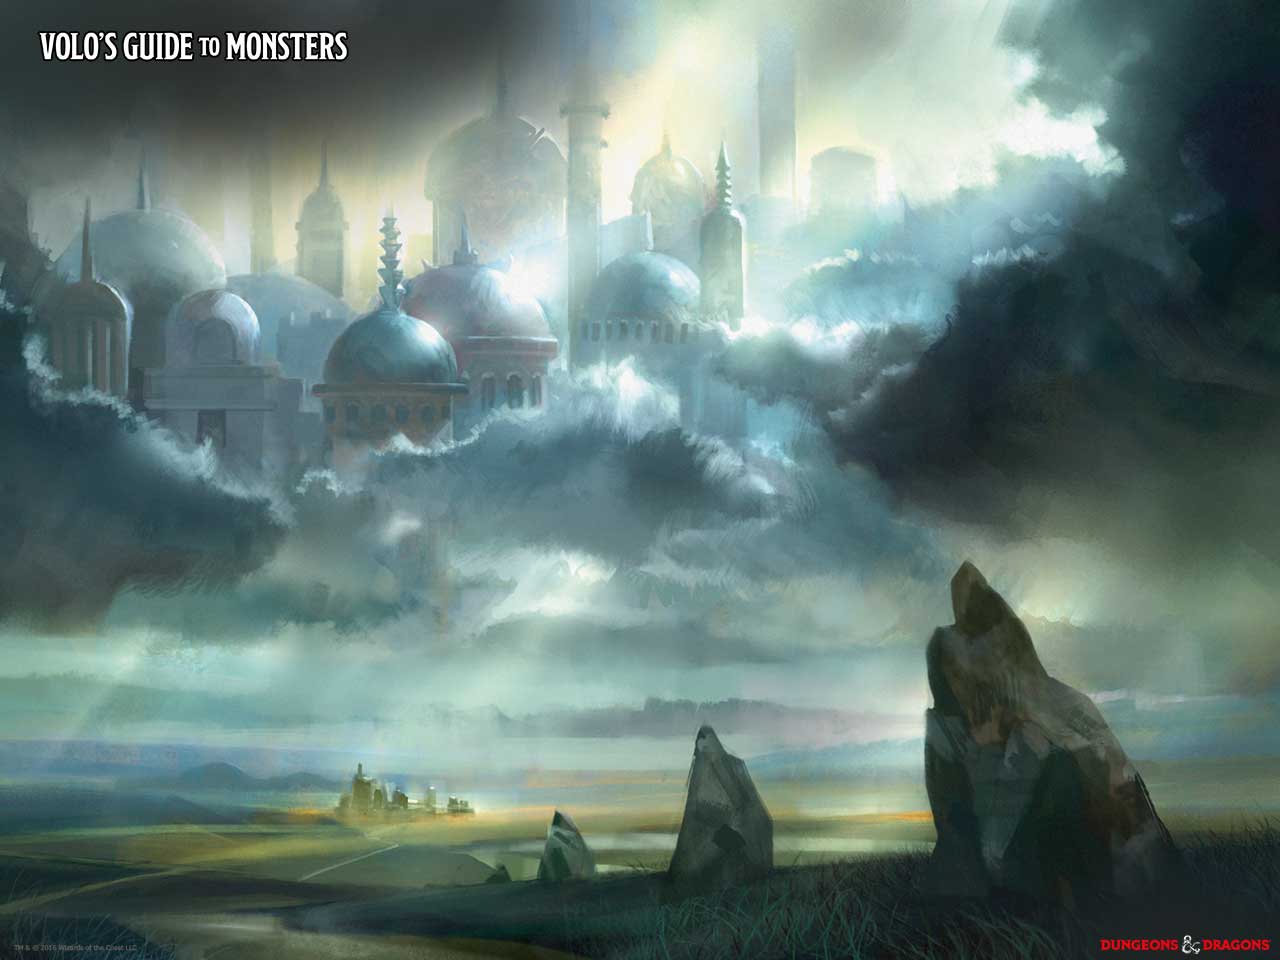 Ein offizielles Wallpaper von Wizards of the Coast von der Reihe "Volo's Guide to Monsters"